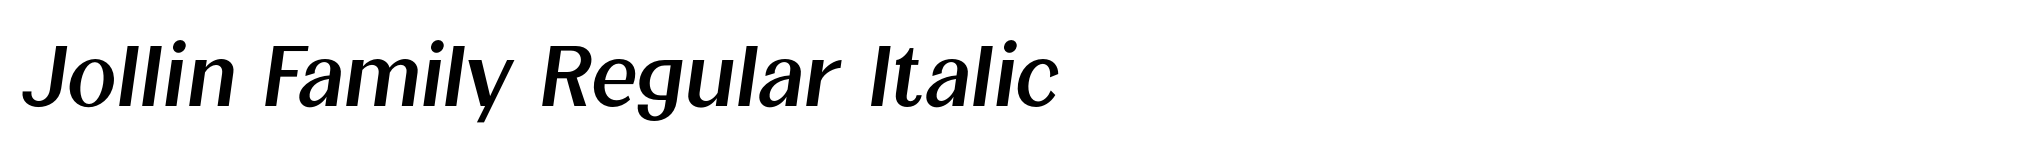 Jollin Family Regular Italic image